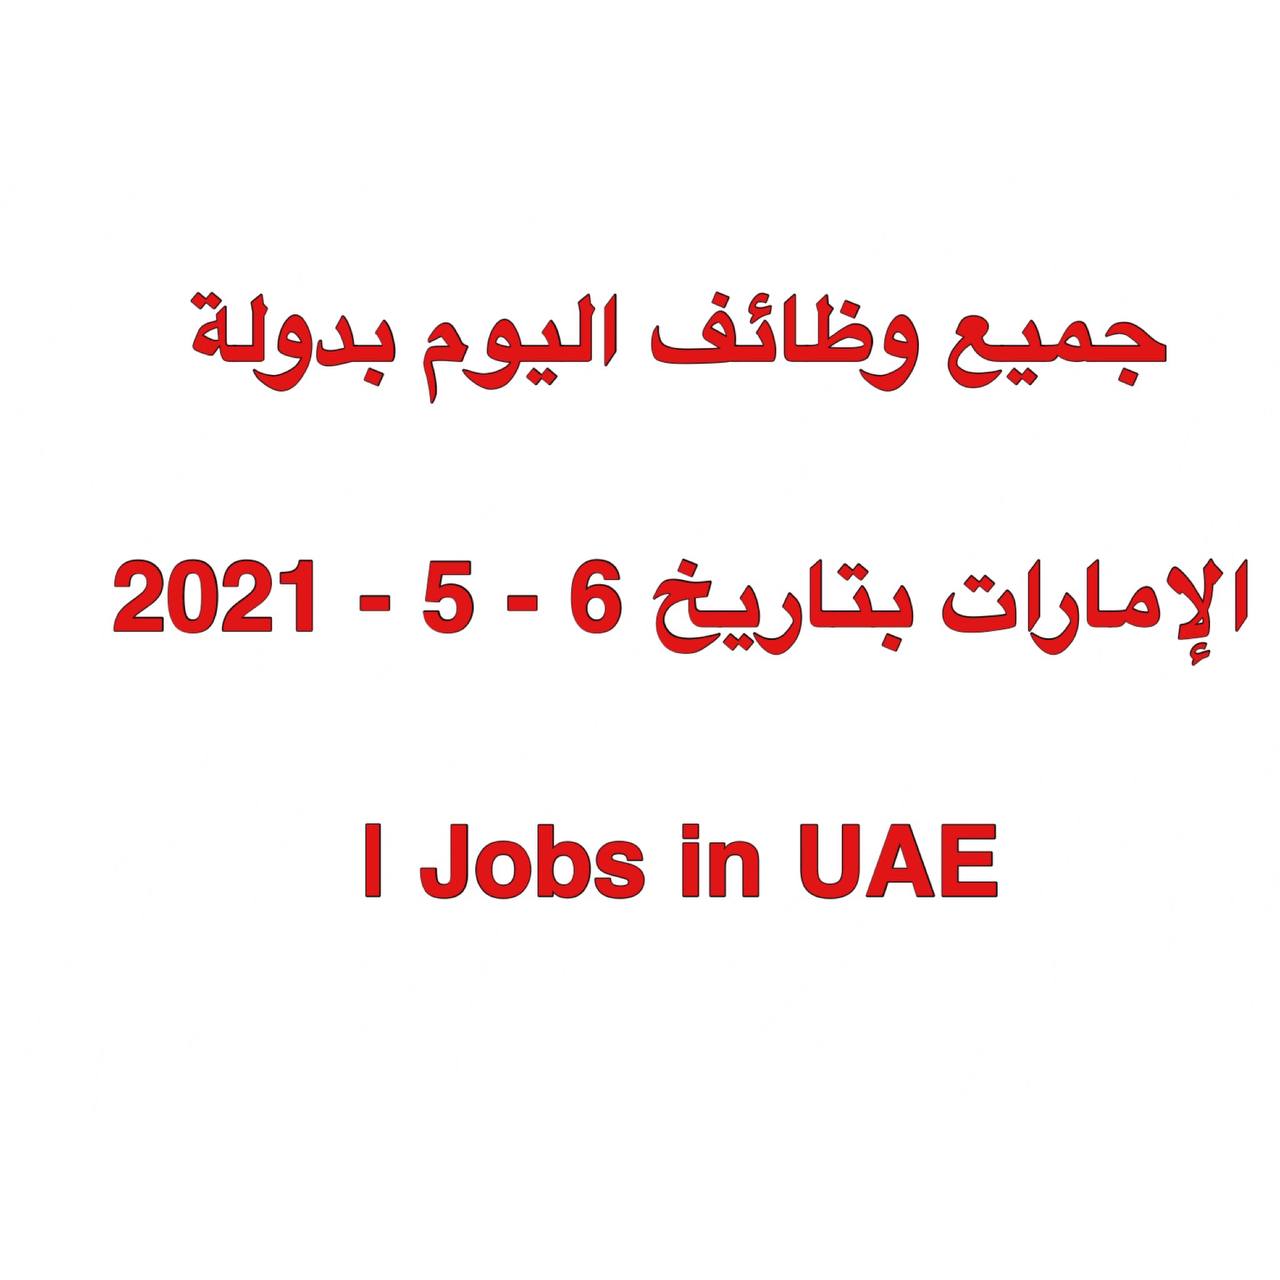 وظائف اليوم للمواطنين والمقيمين بالأمارات بتاريخ اليوم  6- 05 - 2021 | Jobs in UAE    tuazaf, وظائف ابوظبي 2021, وظائف أبوظبي للمواطنين 2021, وظائف بشهادة الثانوية في الإمارات, منصة توظيف الامارات,وظائف في ابوظبي 2021,وظائف أبوظبي 2021, وظائف بشهادة الثانوية في الامارات 2020,وظائف بشهادة الثانوية في الإمارات 2020, وظائف في الامارات,توظف,توظيف الامارات,وظائف للمواطنين 2021,وظائف الامارات 2021,وظائف,توضف,منصة الوظائف, وظائف الامارات, وظائف في الامارات 2021,توظيف ابوظبي 2021, وظائف ابوظبي,منصة التوظيف, وظائف دبي اليوم,منصة توظيف, وظائف في أبوظبي 2021, منصه توظيف, وظائف في ابو ظبي 2021, وظائف شاغرة في ابوظبي 2021, وظائف 2021, وظائف في الإمارات 2021,وظائف خالية فى الامارات بتاريخ اليوم, وظائف في أبوظبي, توظيف في الامارات 2021,توظيف, توظيف 2021, وظائف أبوظبي للمواطنين, وظائف في أبوظبي للمواطنين, الامارات,وظائف في ابوظبي,وظائف أبوظبي,وظائف خالية,منصة وظائف,منصة التوضيف,منصةالتوظيف,منصه التوظيف,بريد الامارات وظائف,وظائف تسهيل 2021,وظائف في الشارقة 2021,وظائف الشارقة 2021,وظائف في ابوظبي للمواطنين,وظائف في الامارات للمواطنين,وظائف جامعات الامارات,وظائف الامارات الحكومية,وظائف للمواطنين ابوظبي,شواغر في دبي,وظائف شاغرة,